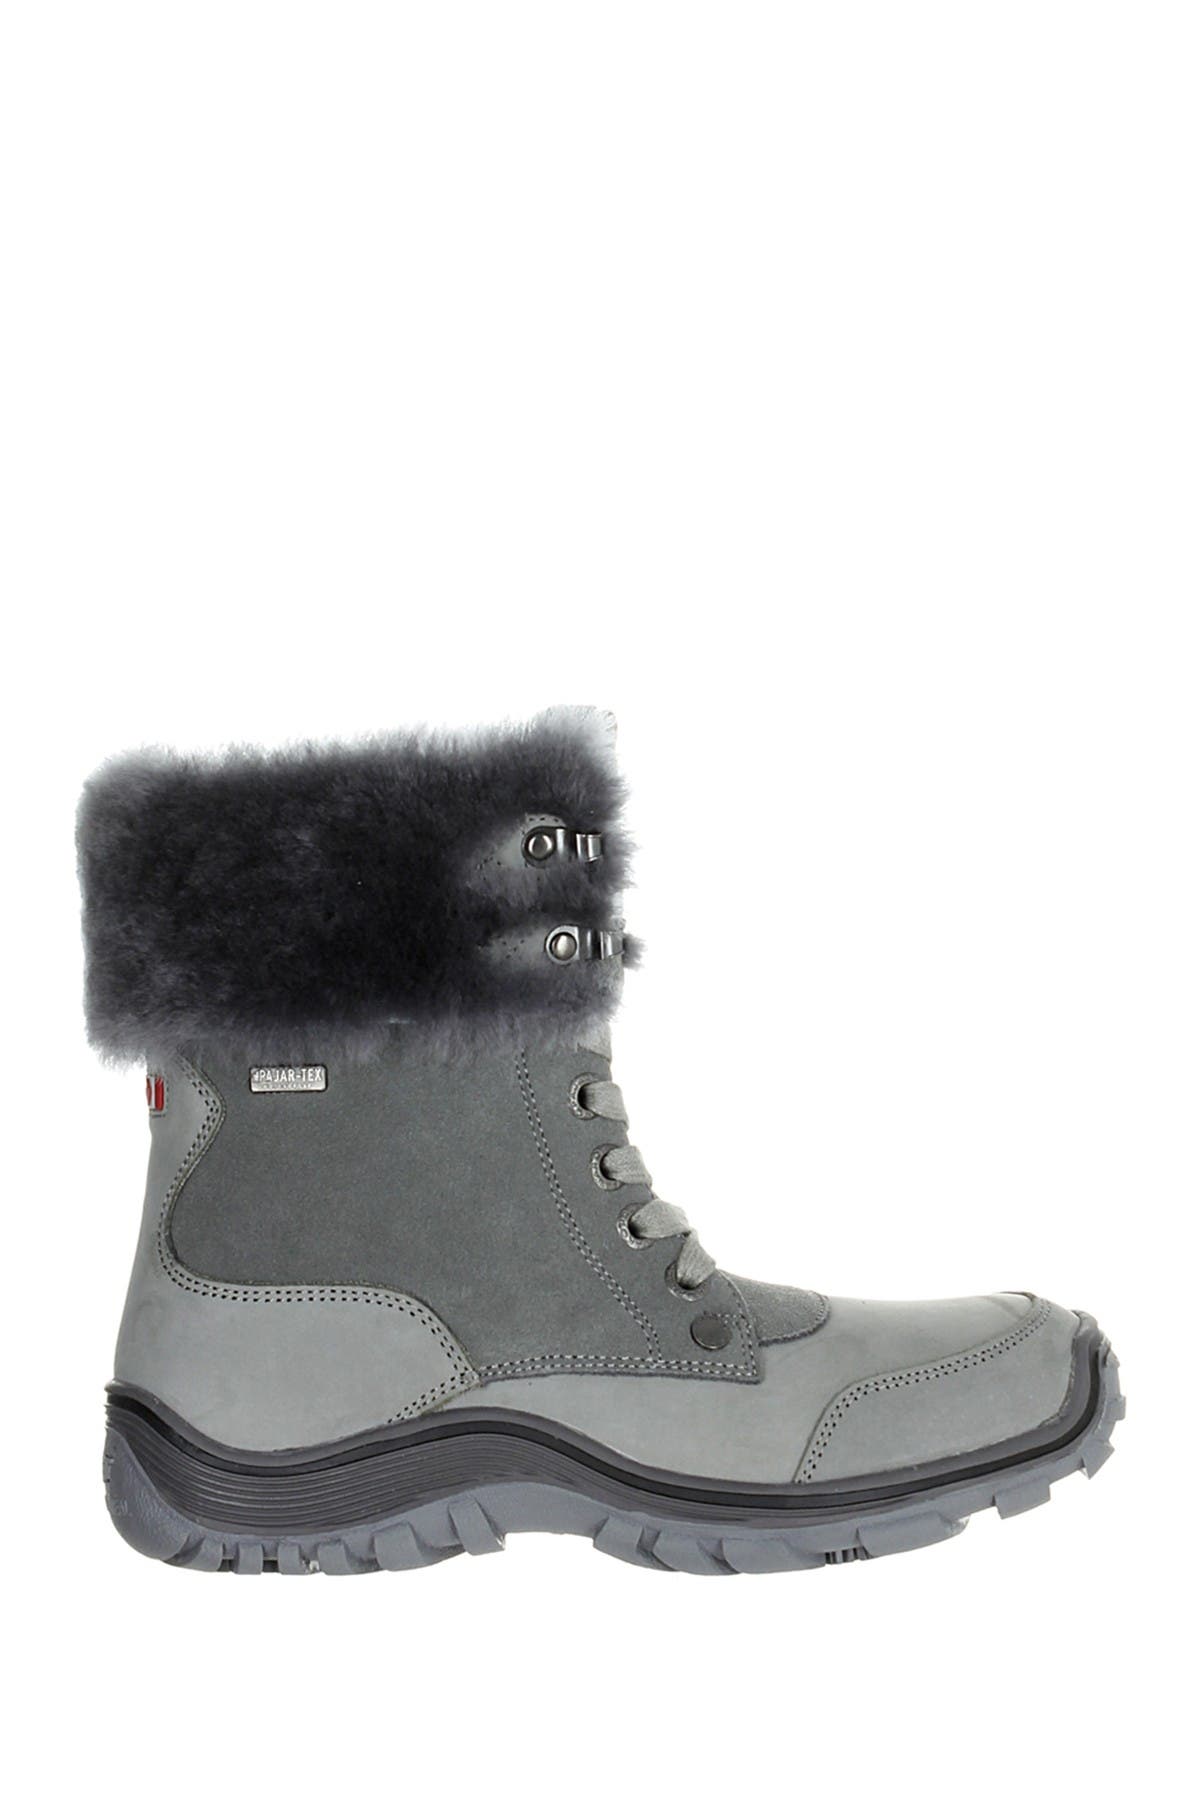 pajar sheepskin boots